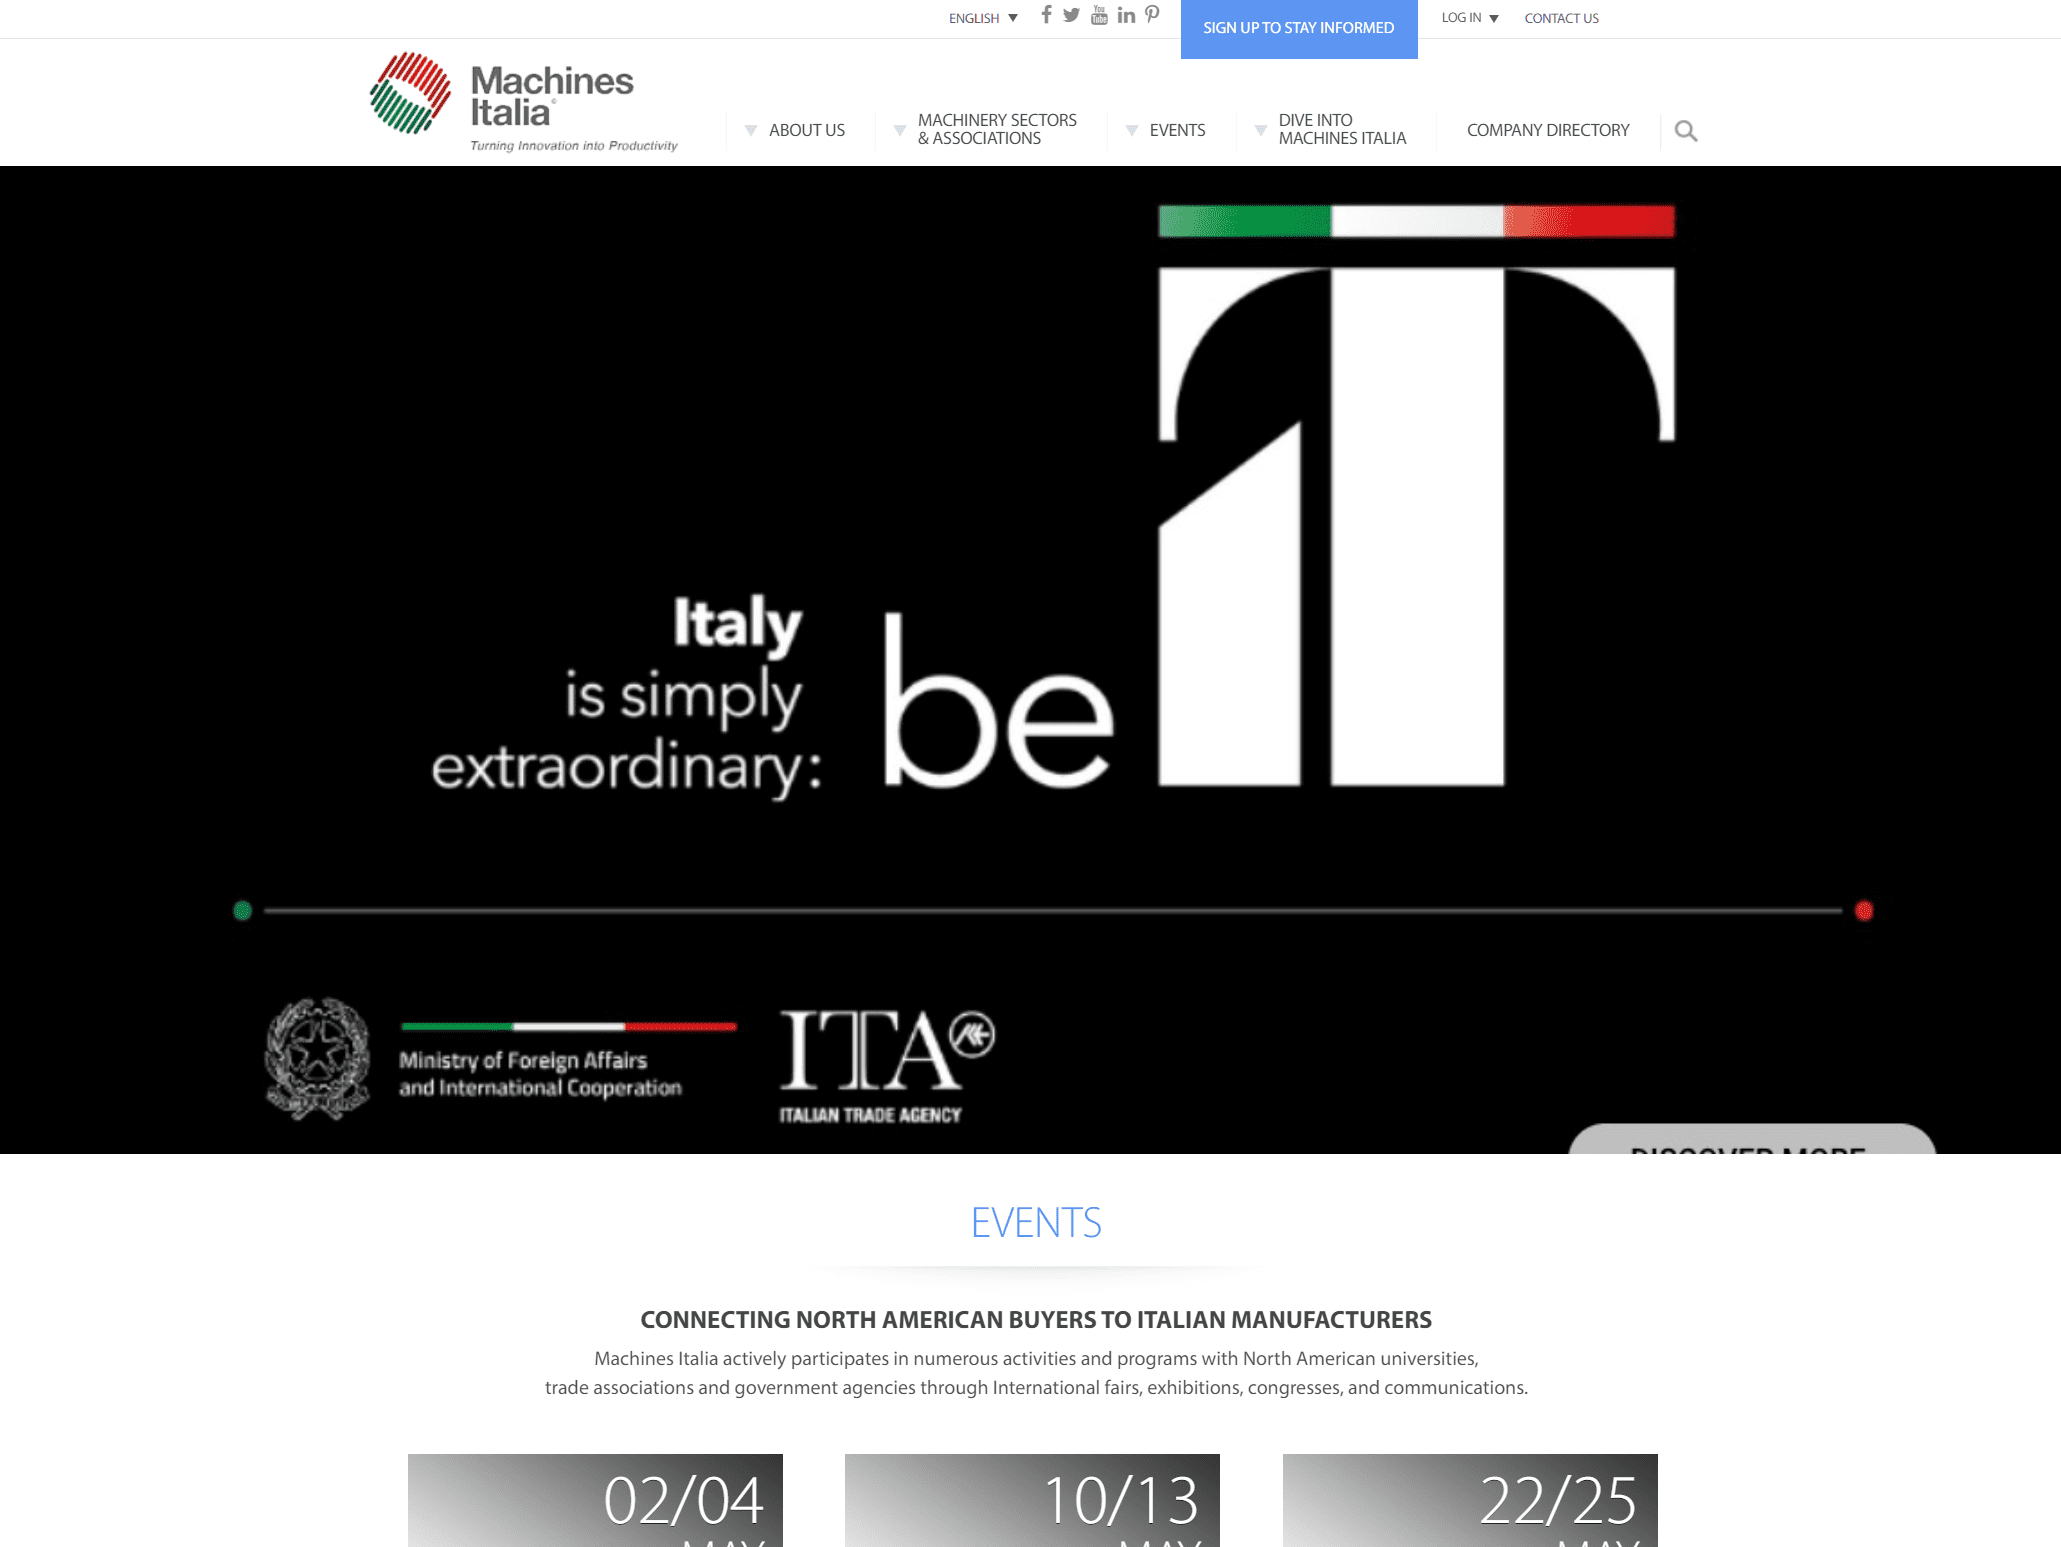 pf-machines-italia-sem-campaign